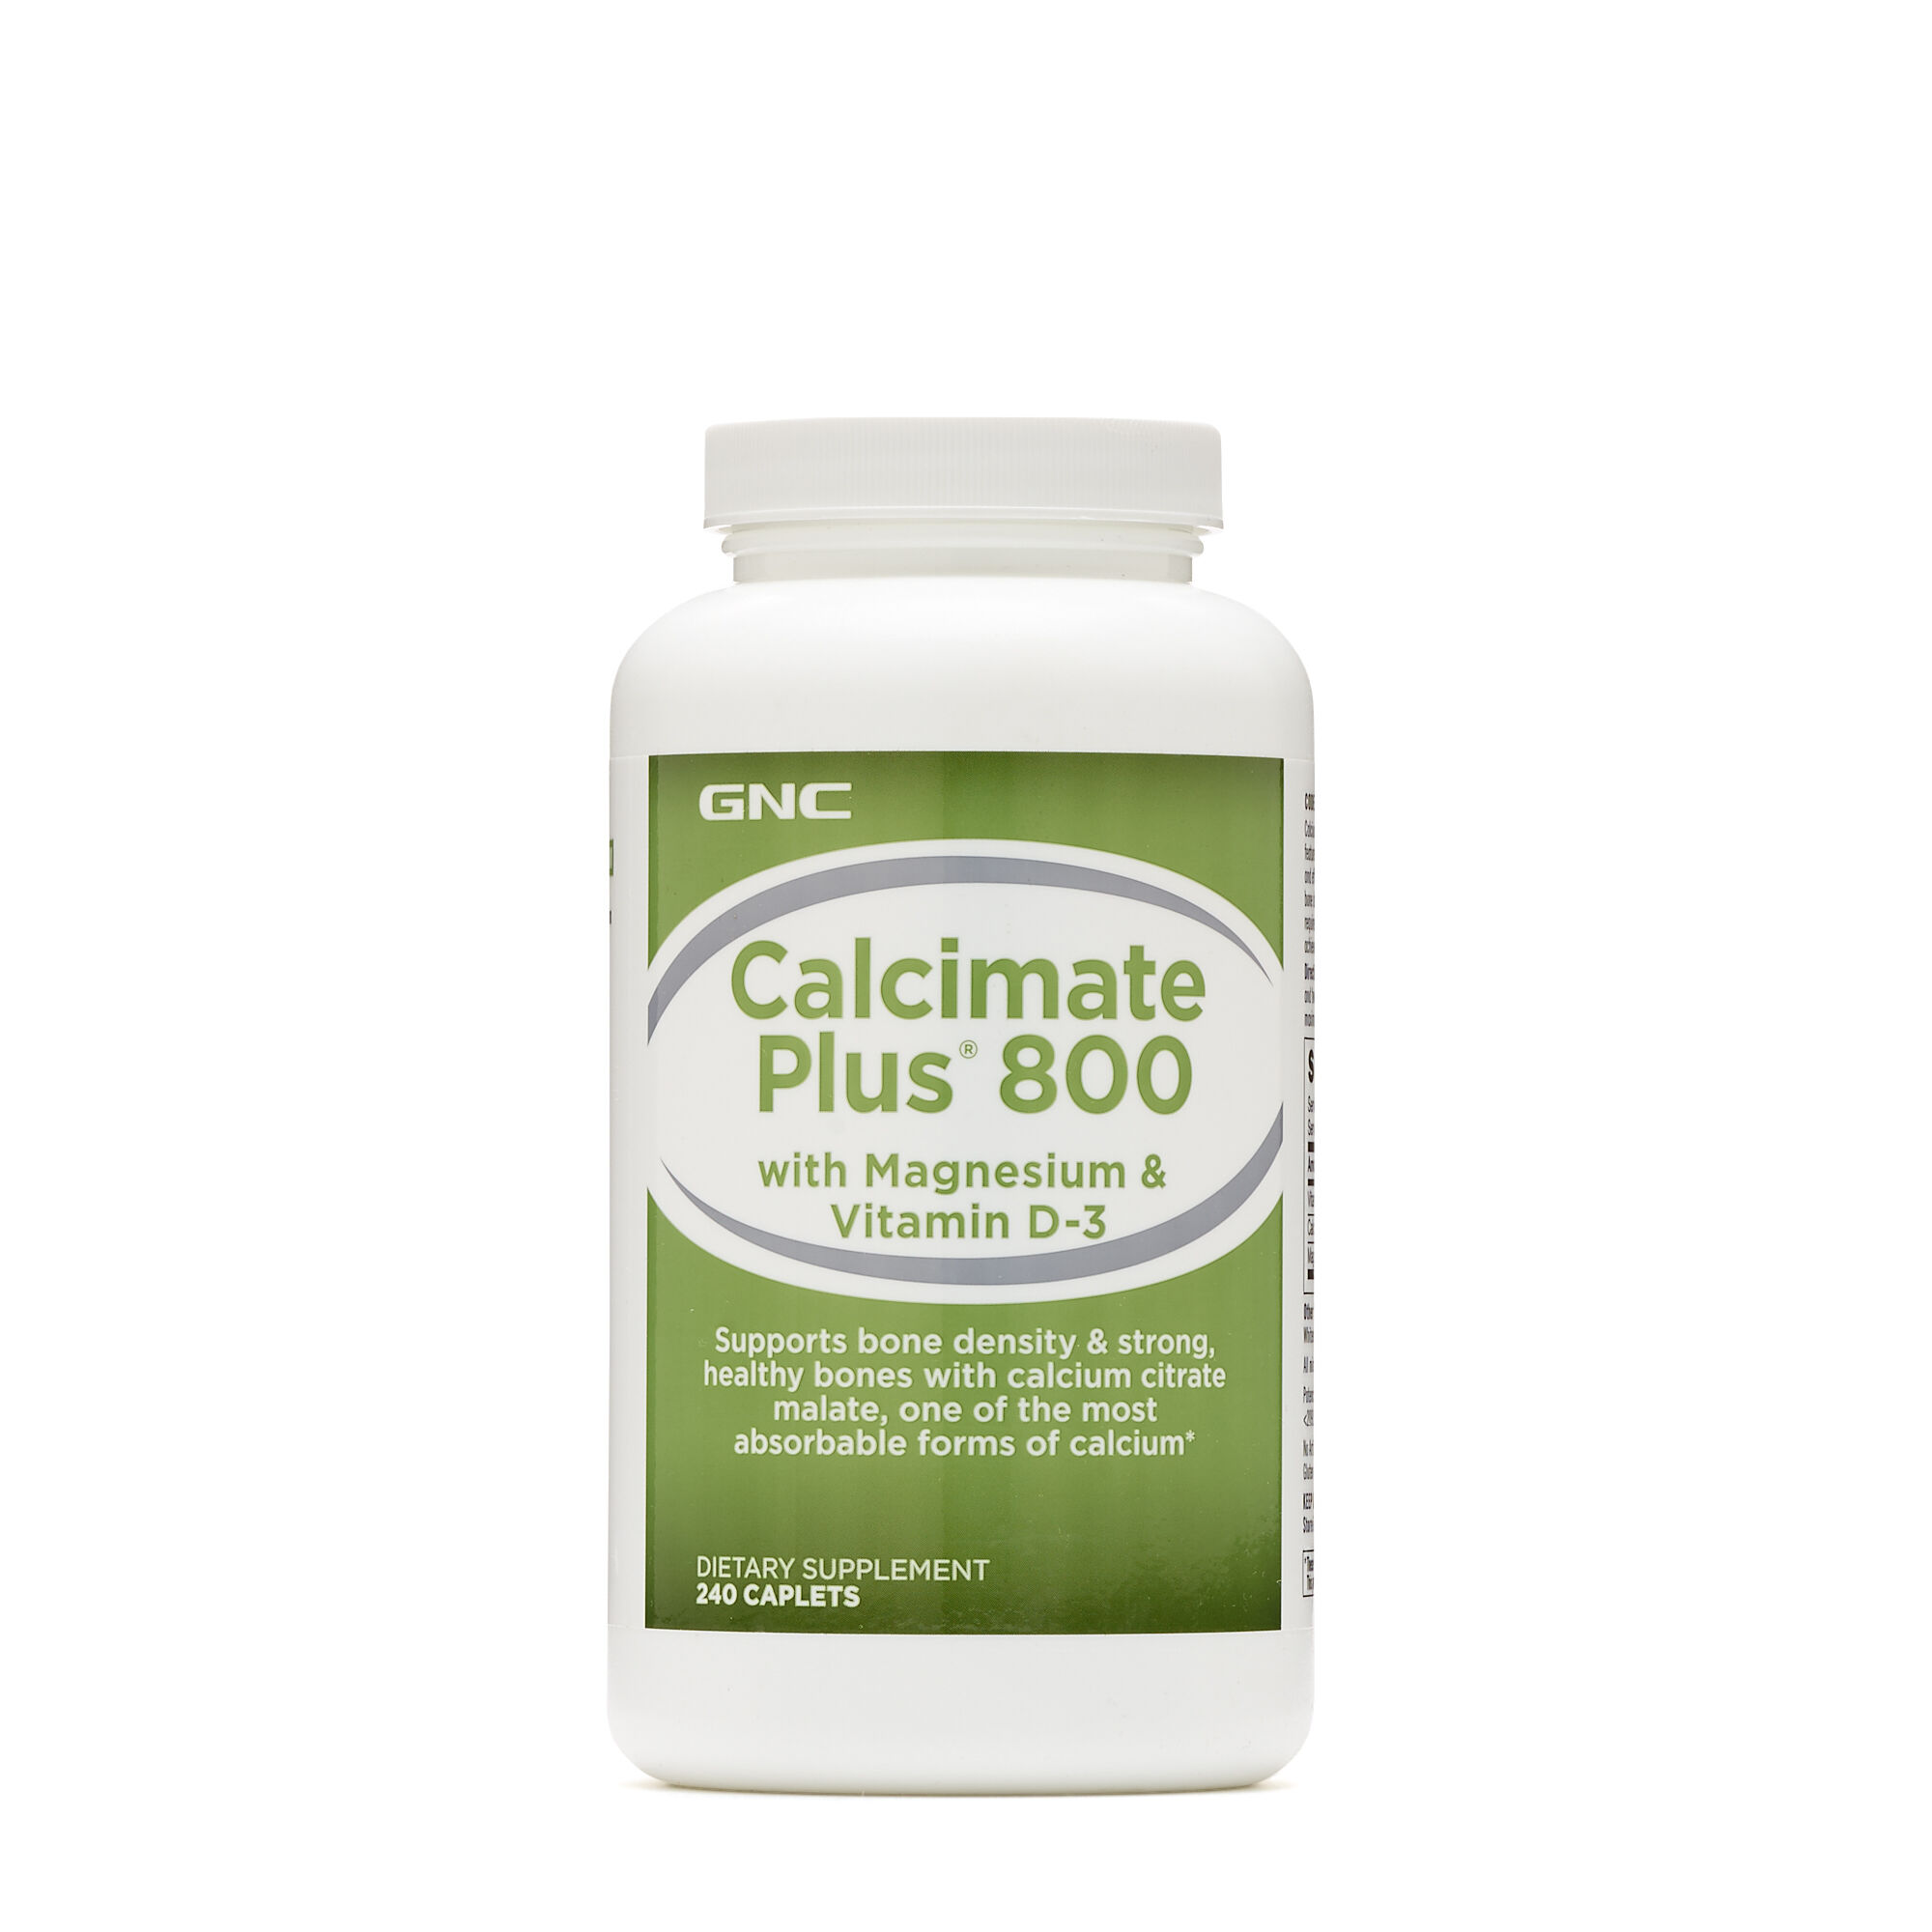 Gnc Calcimate Plus 800 With Magnesium Vitamin D 3